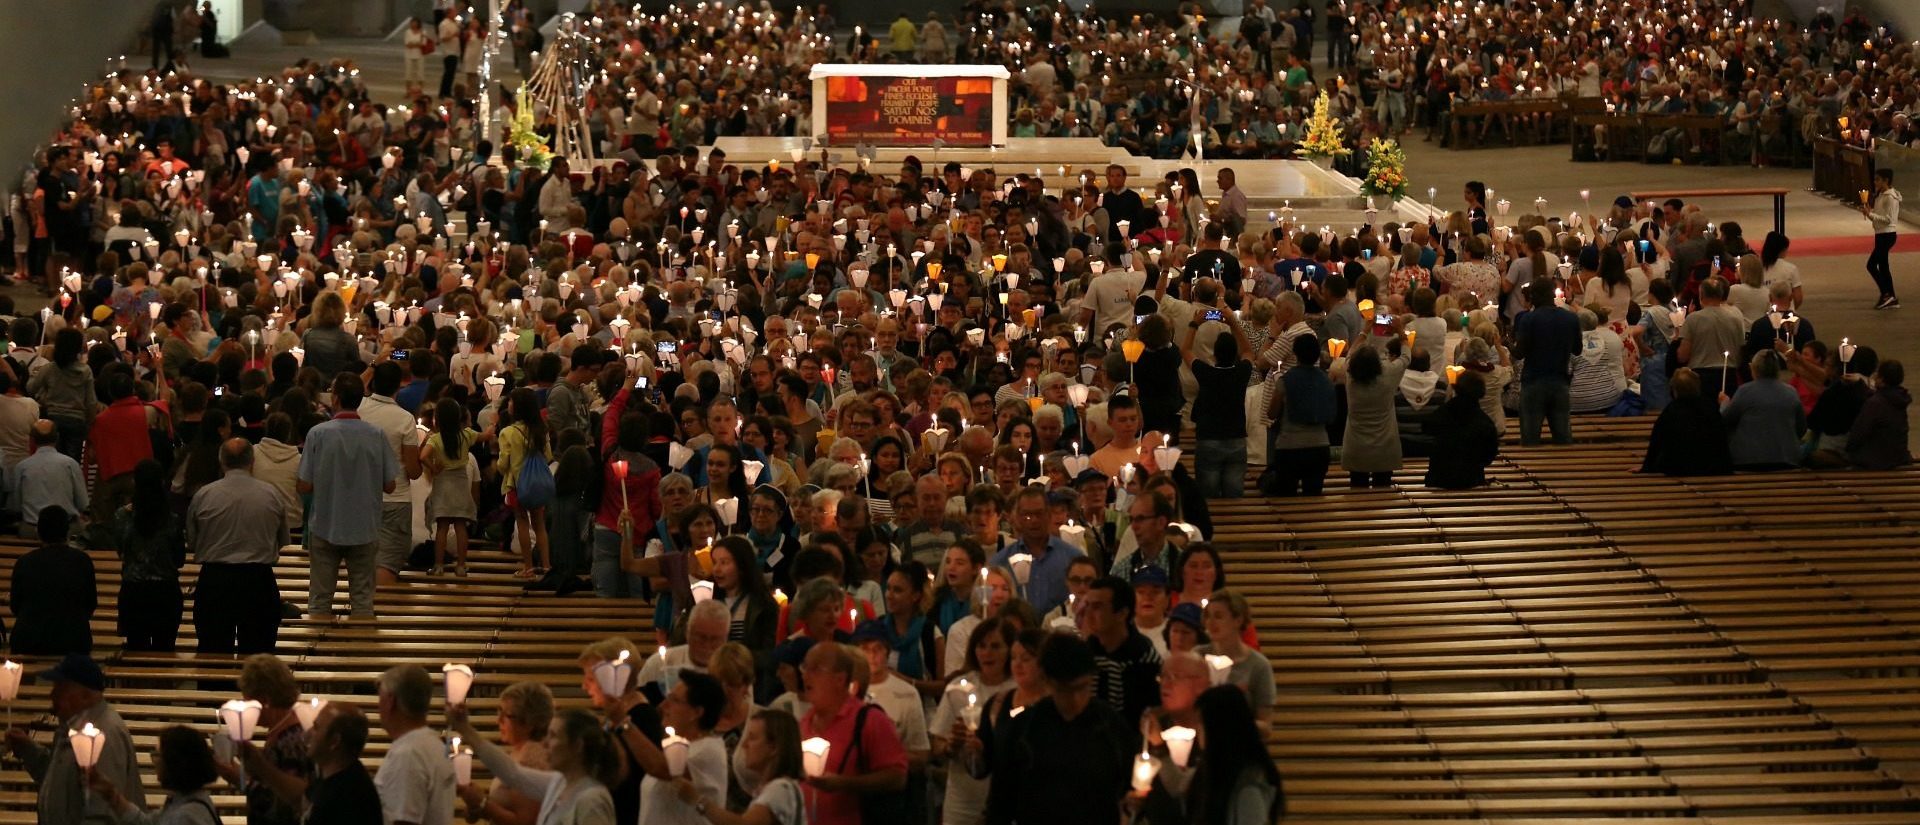 Le pape François a souhaité que les pèlerins trouvent des signes d'espérance dans les sanctuaires | photo: procession à Lourdes © Bernard Hallet